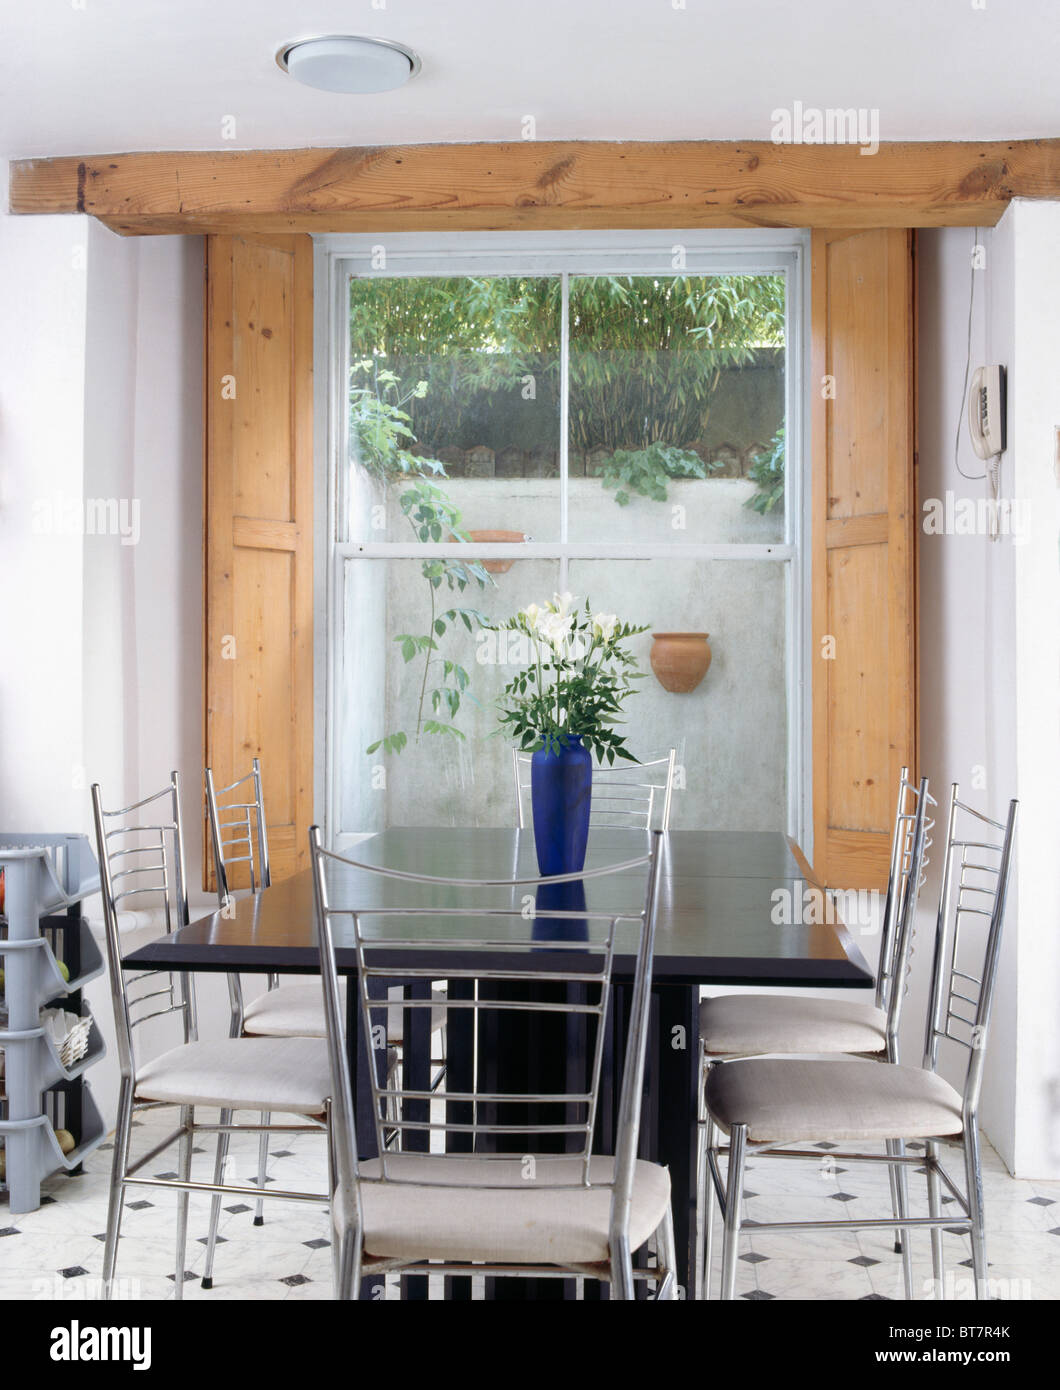 Metallo e sedie bianche a tavola nera nel seminterrato moderna sala da pranzo con persiane di legno in corrispondenza della finestra Foto Stock